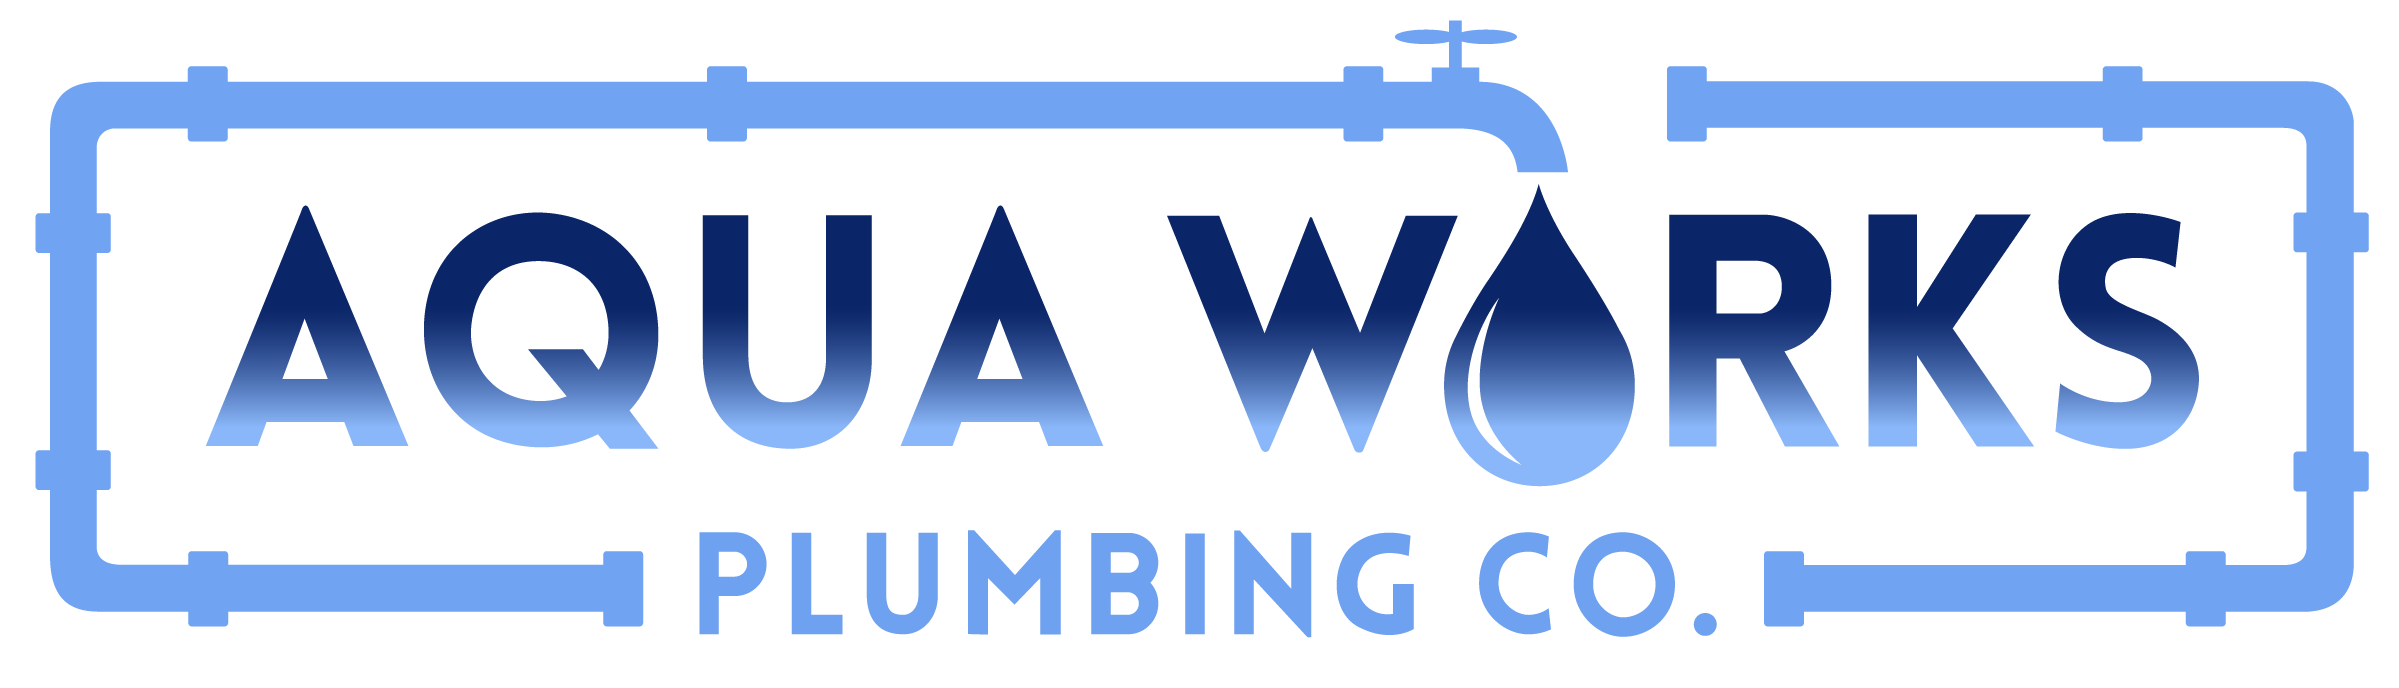 Aqua Works Plumbing Co.